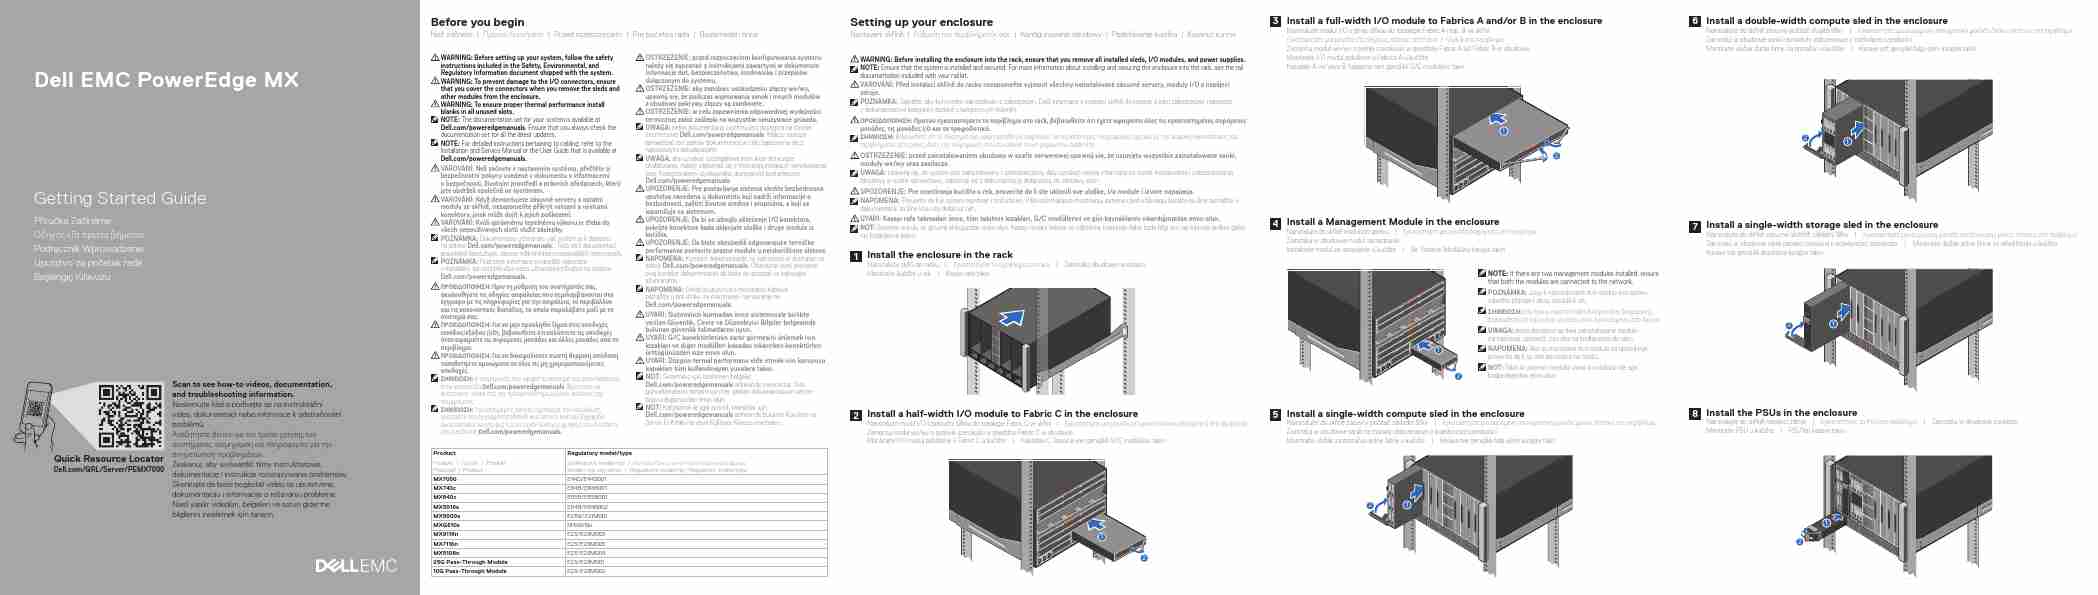 DELL EMC POWEREDGE MX5108N-page_pdf